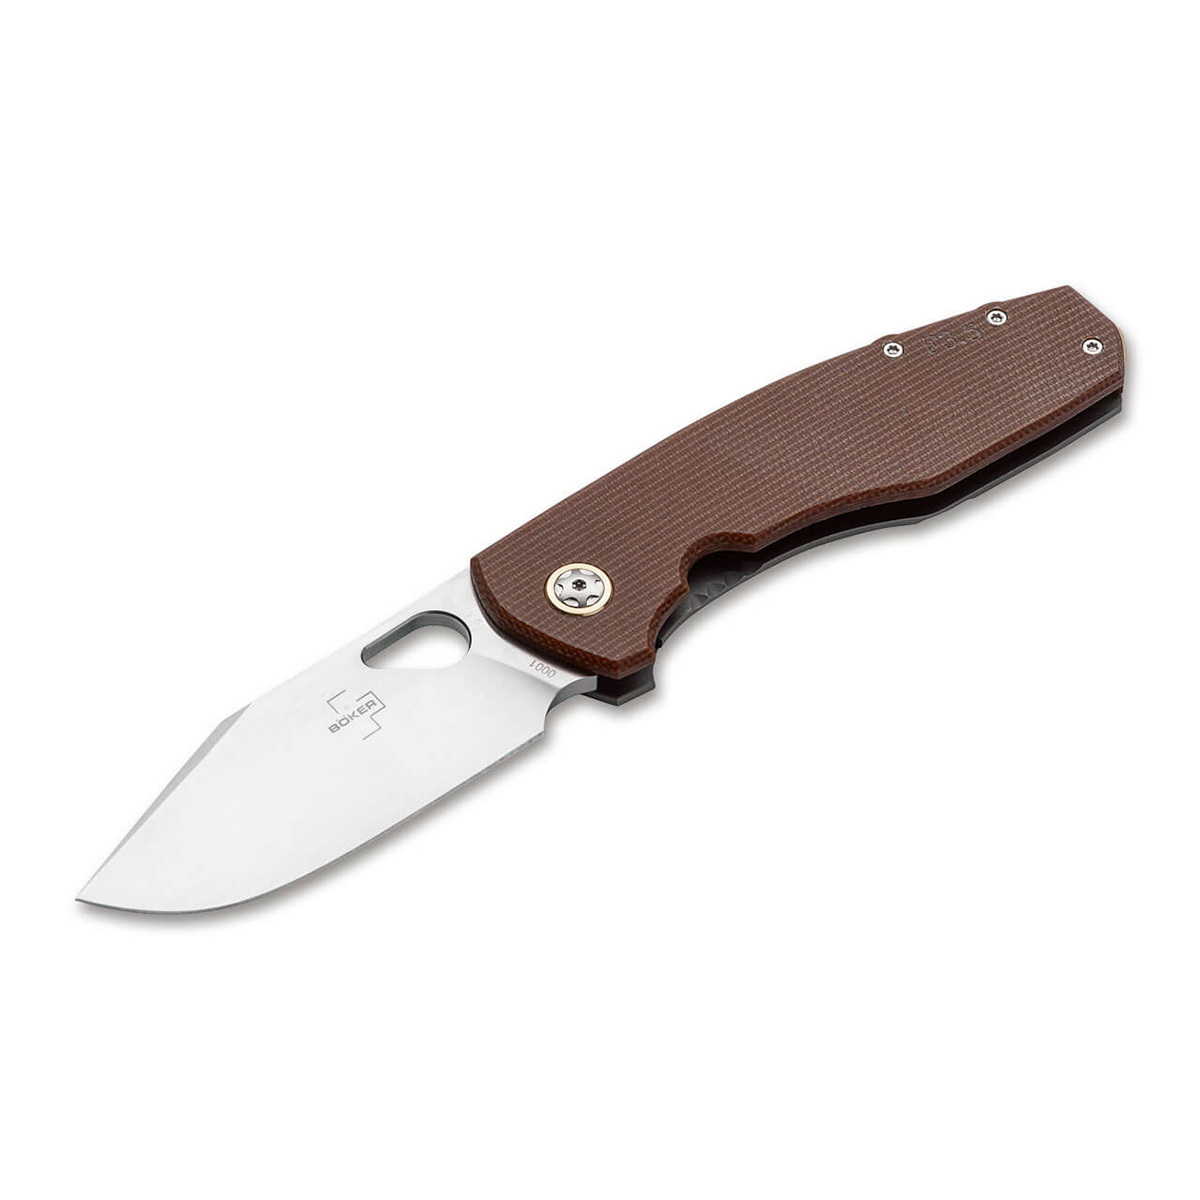 Нож складной Boker Vox F3.5 Micarta, сталь D2, рукоять микарта складной нож artisan cazador сталь ar rpm9 рукоять micarta